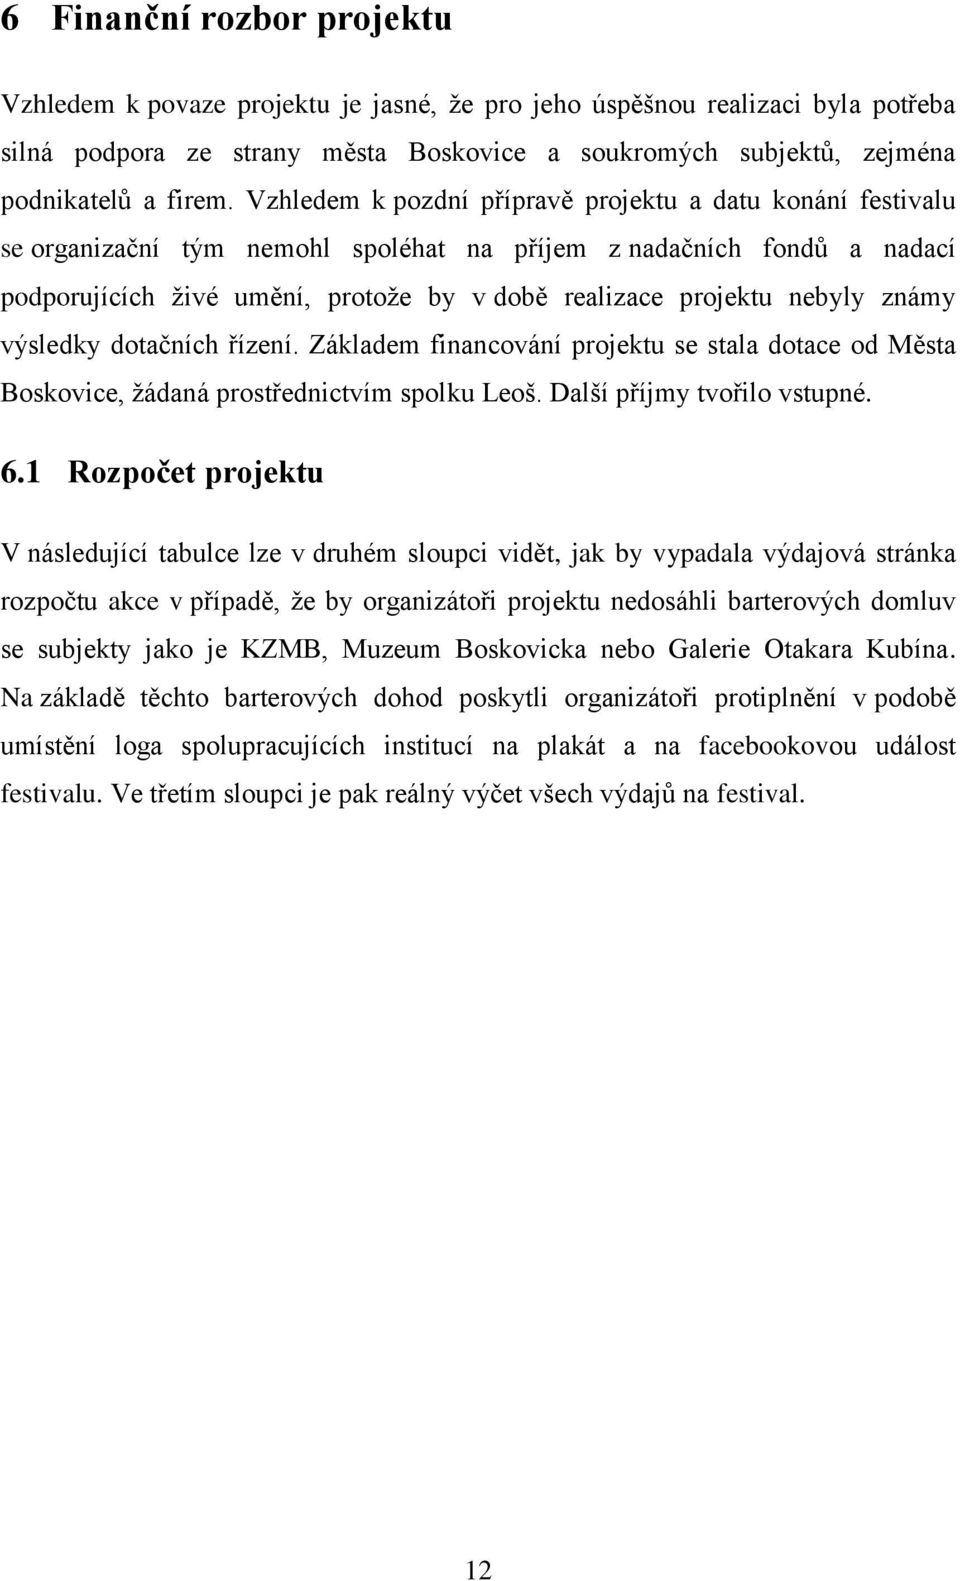 nebyly známy výsledky dotačních řízení. Základem financování projektu se stala dotace od Města Boskovice, žádaná prostřednictvím spolku Leoš. Další příjmy tvořilo vstupné. 6.